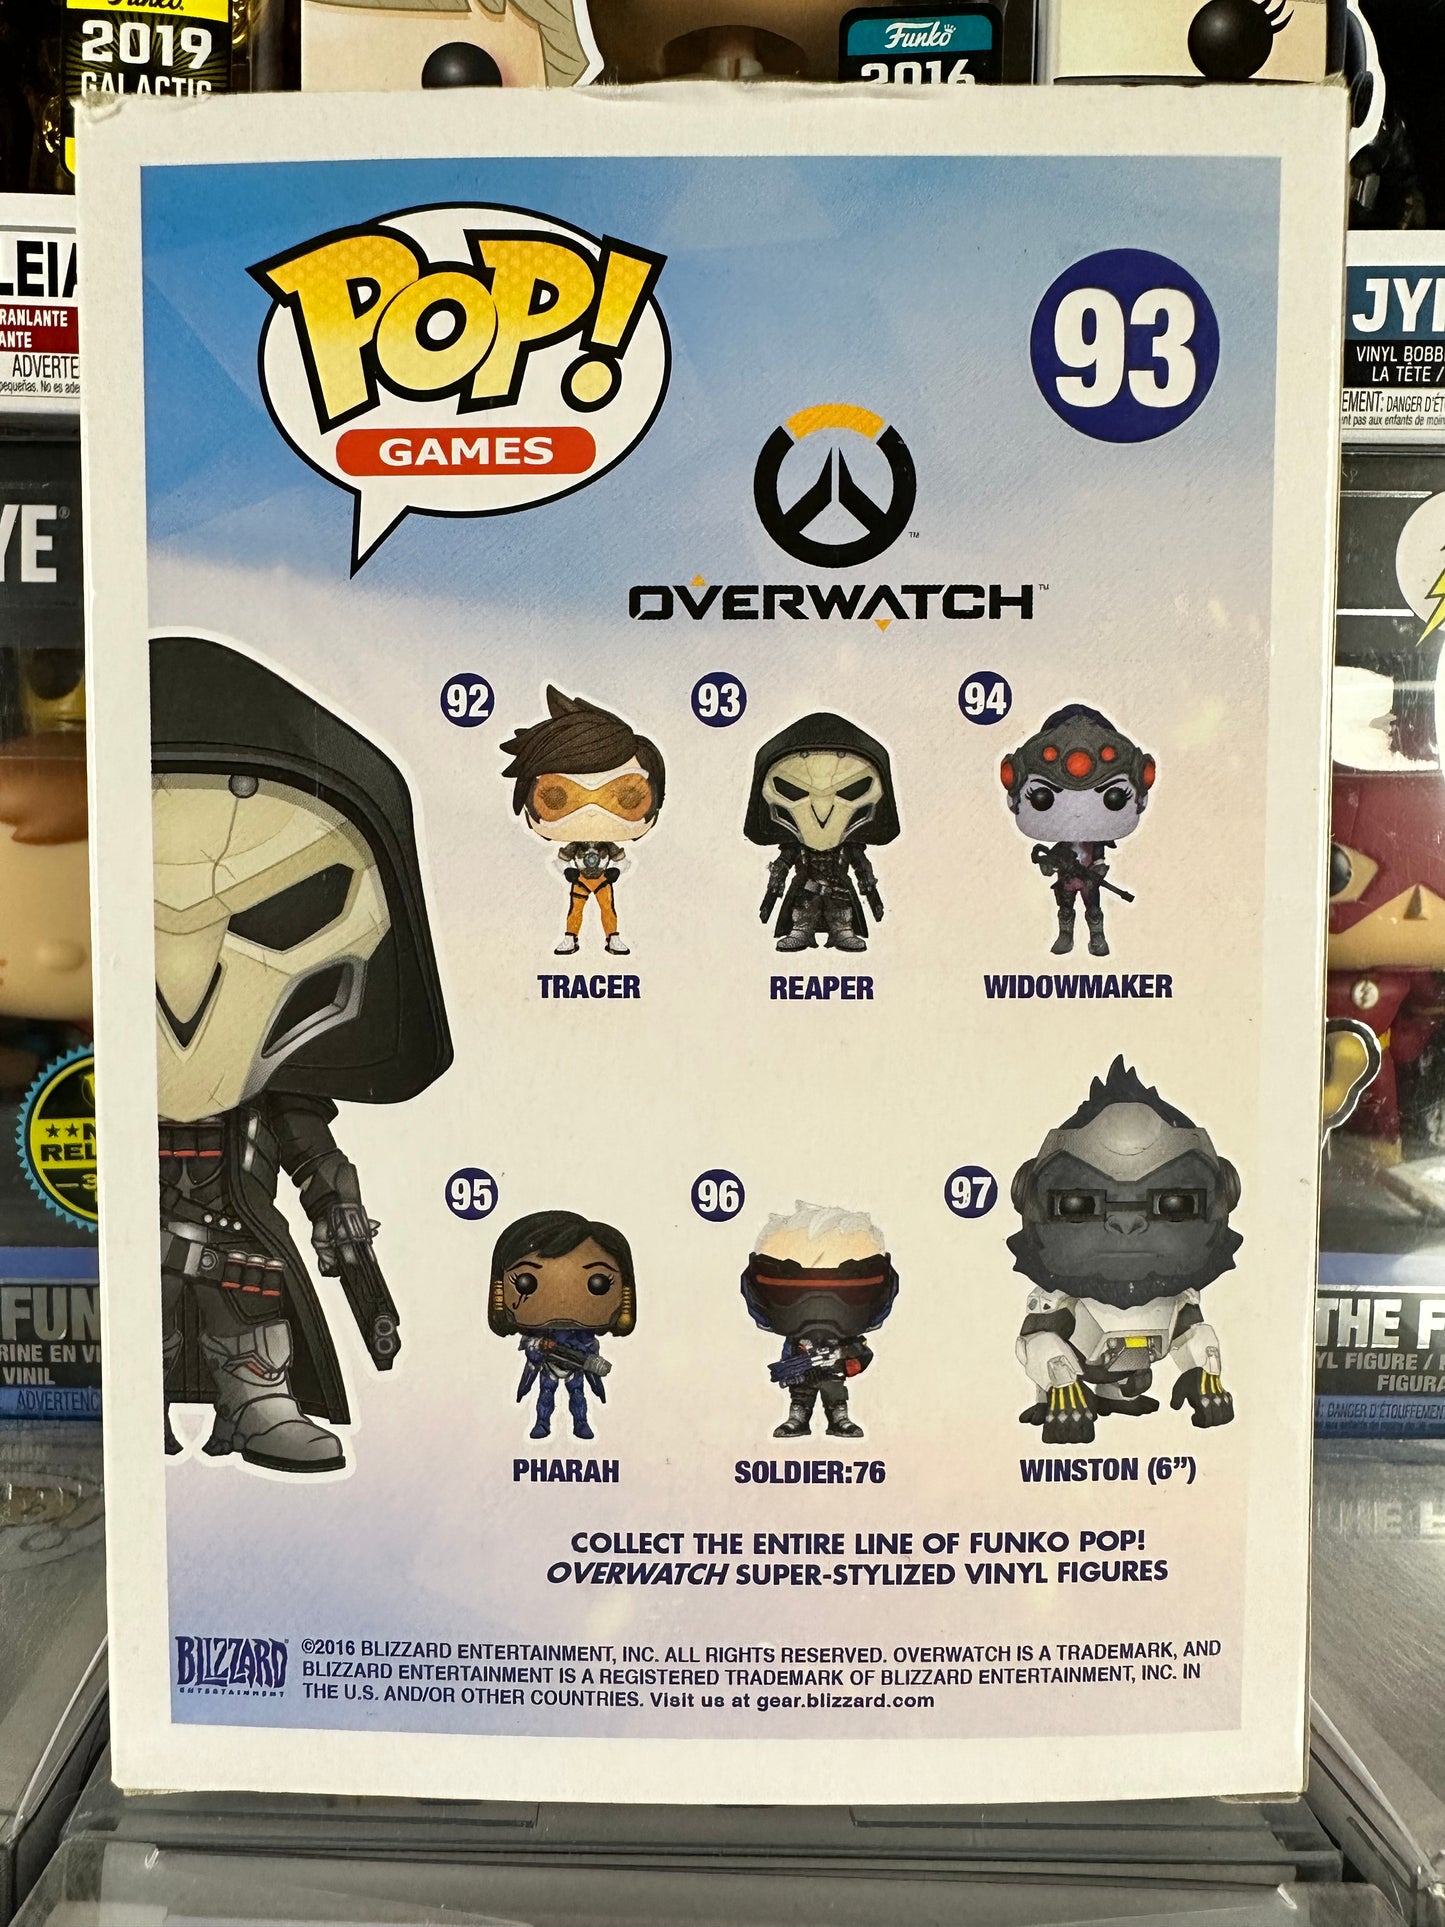 Overwatch - Reaper (93) Vaulted